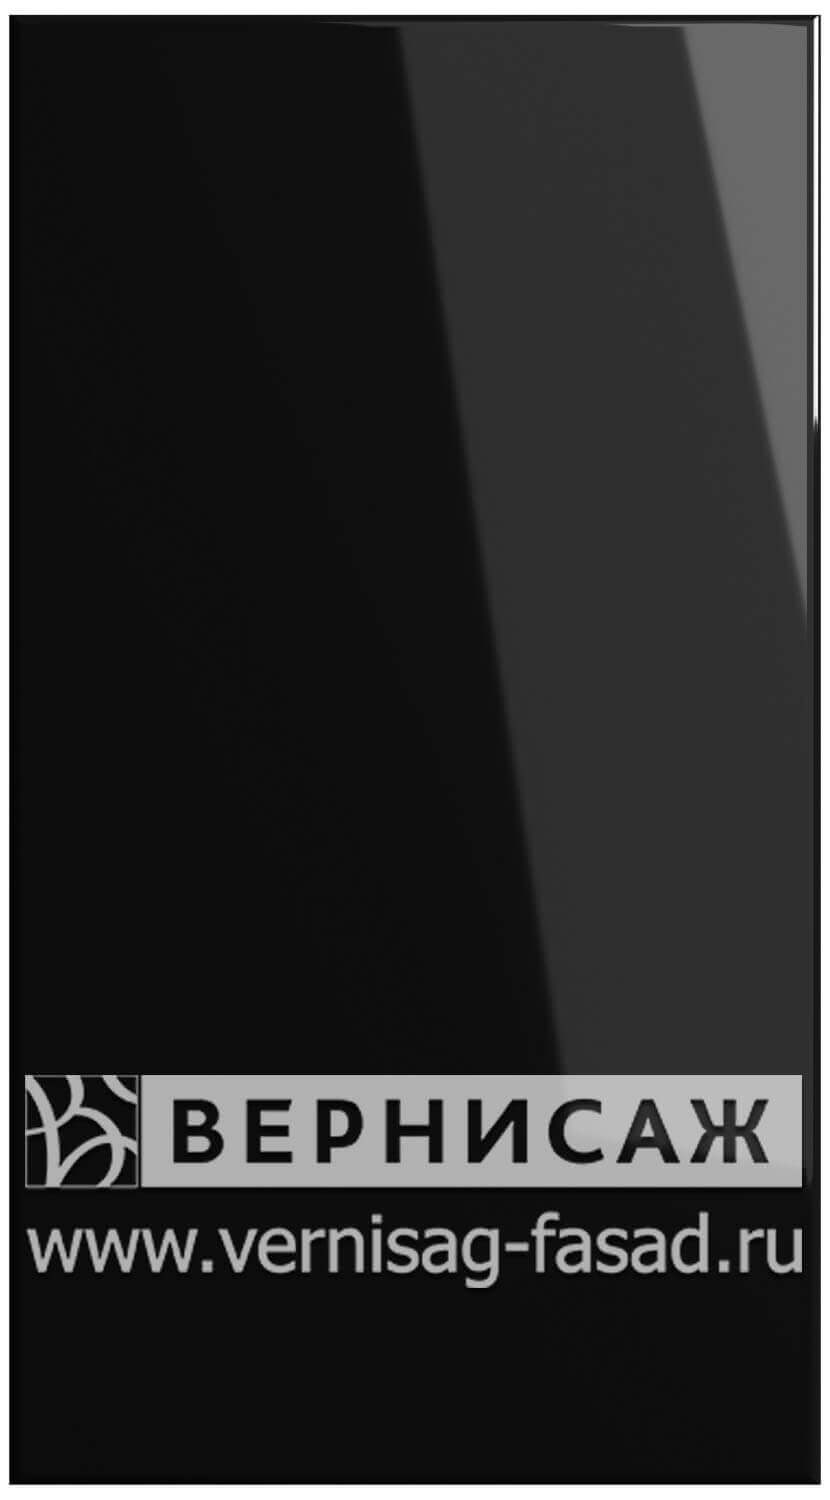 Фасады в пленке ПВХ, Фрезеровка № 15, цвет Черный глянец